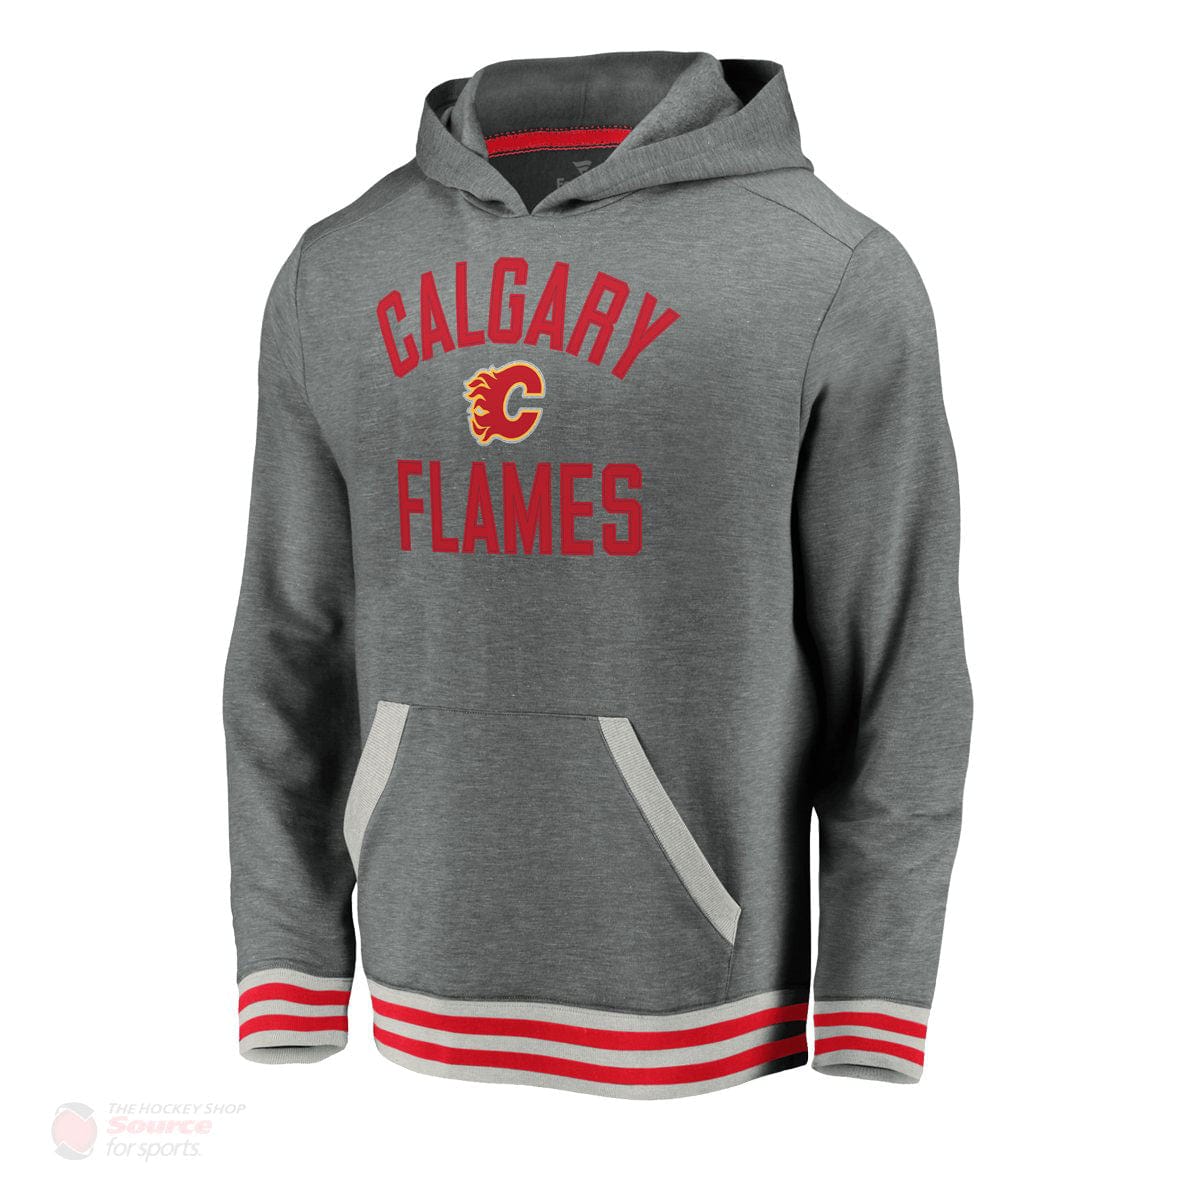 Calgary Flames Fanatics Upperclassmen Vintage Pullover Mens Hoody